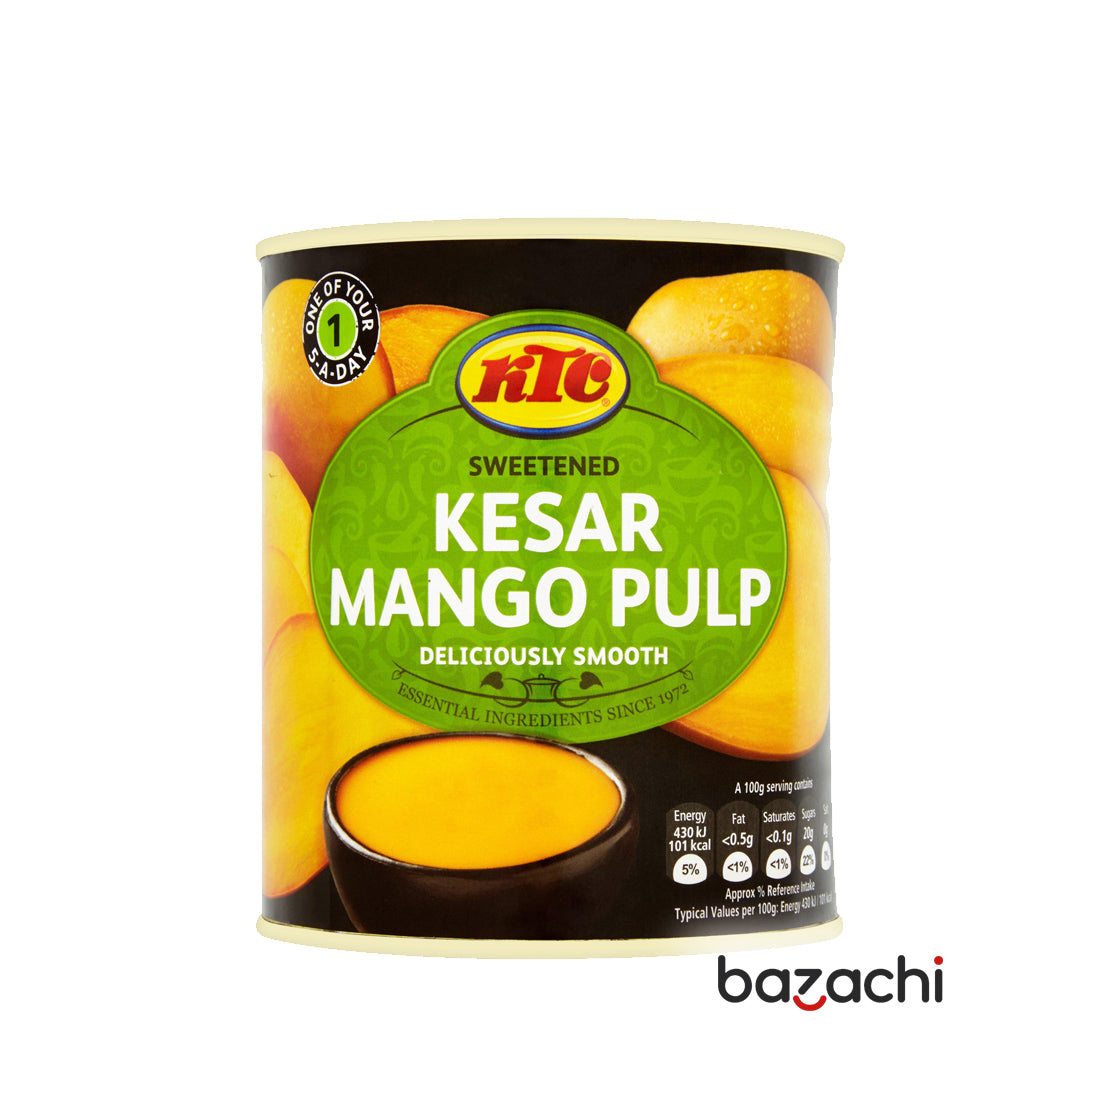 KTC Sweetened Kesar Mango Pulp 850g